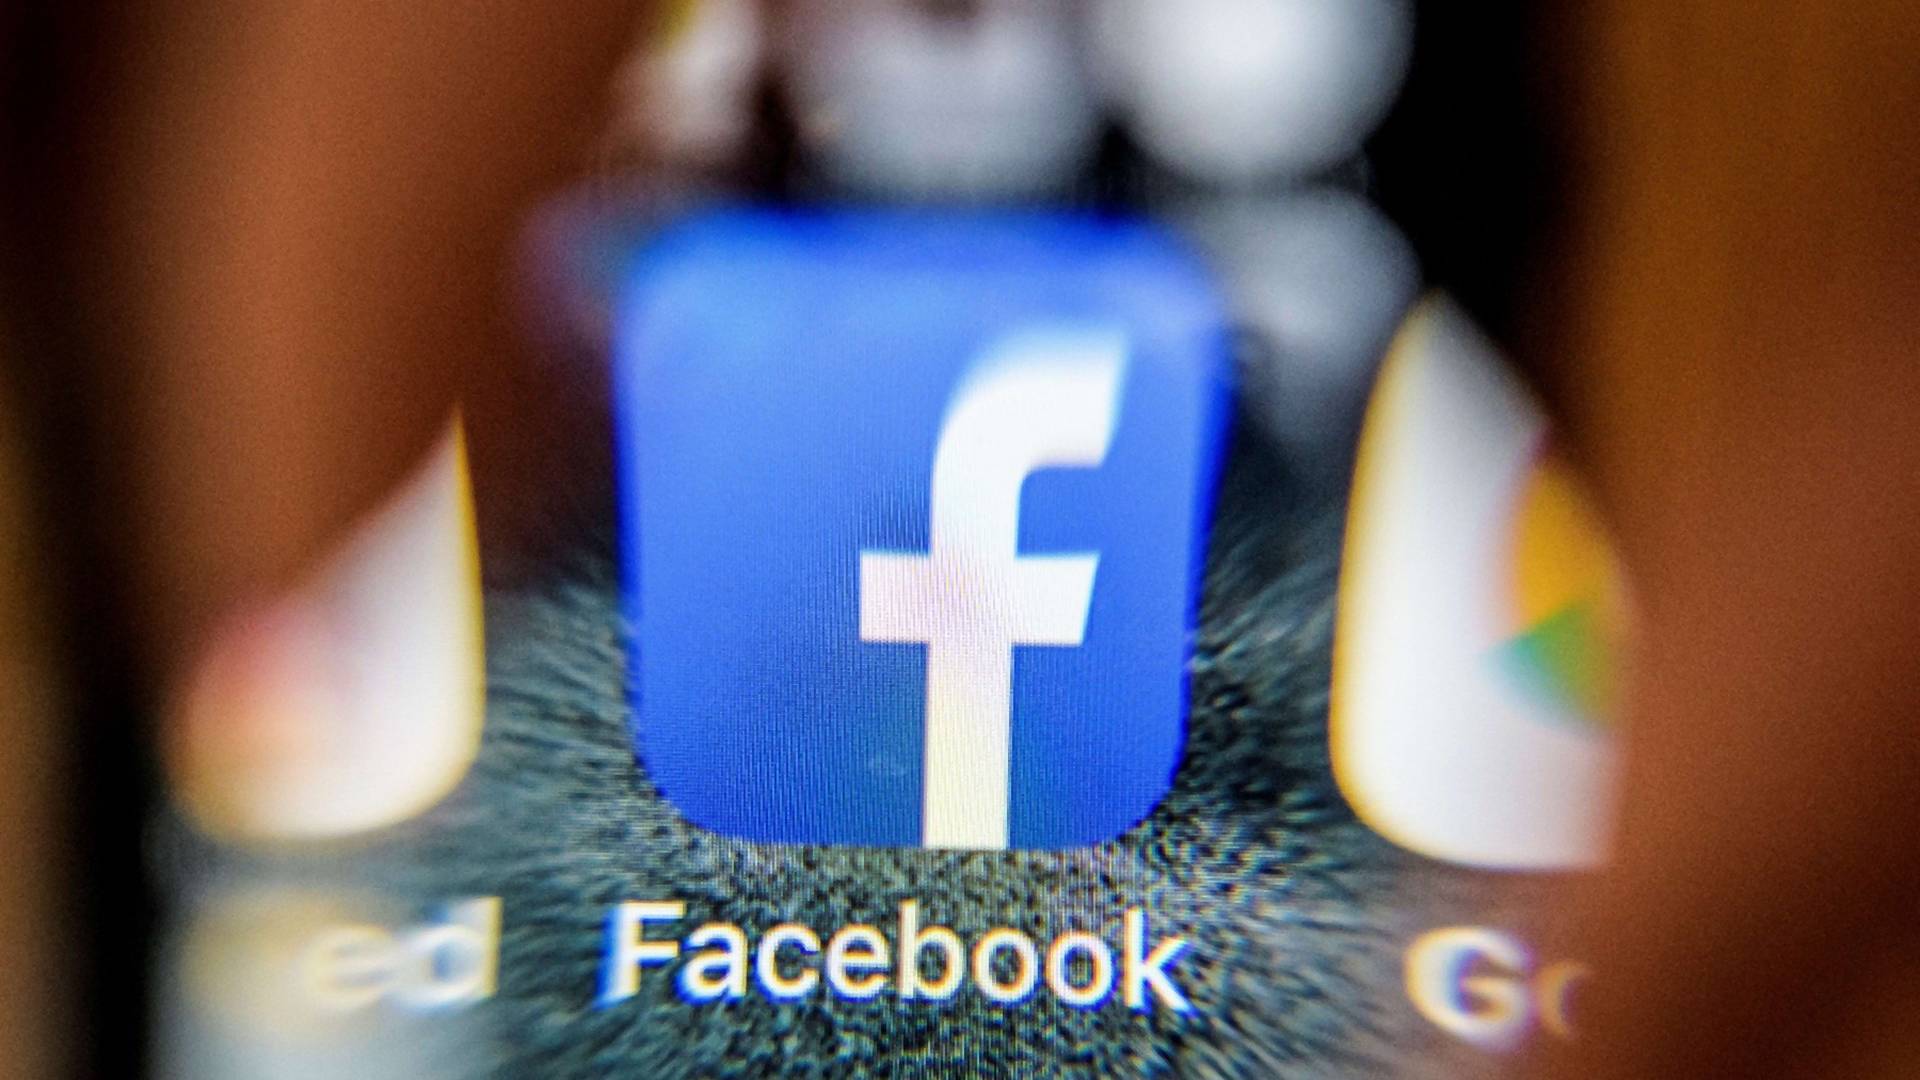 Facebook je upravo priznao da su privatni podaci većine korisnika zloupotrebljeni